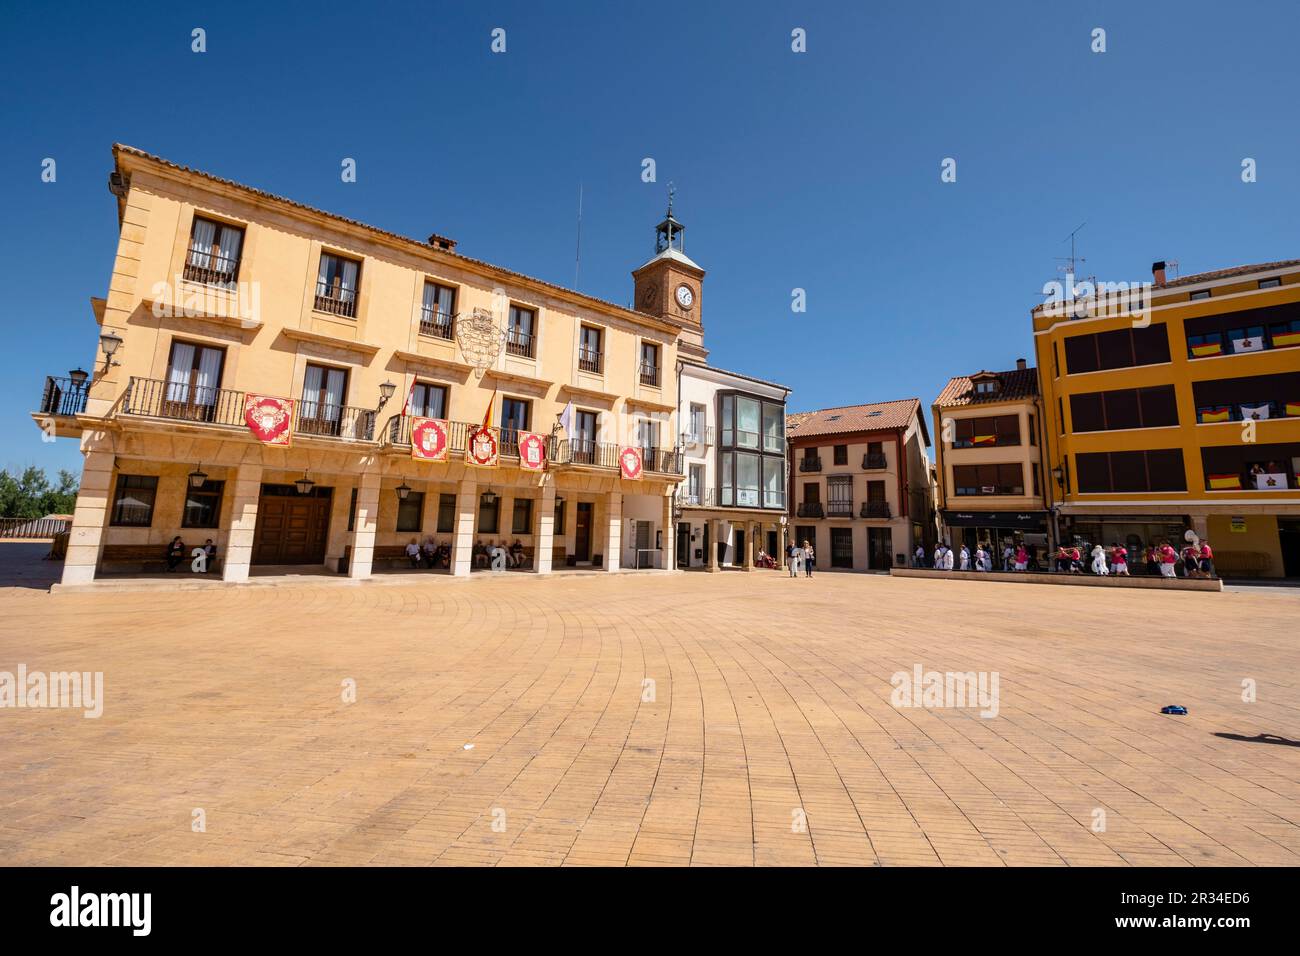 Ayuntamiento,Almazán, Soria, comunidad autónoma de Castilla y León, Spain, Europe. Stock Photo